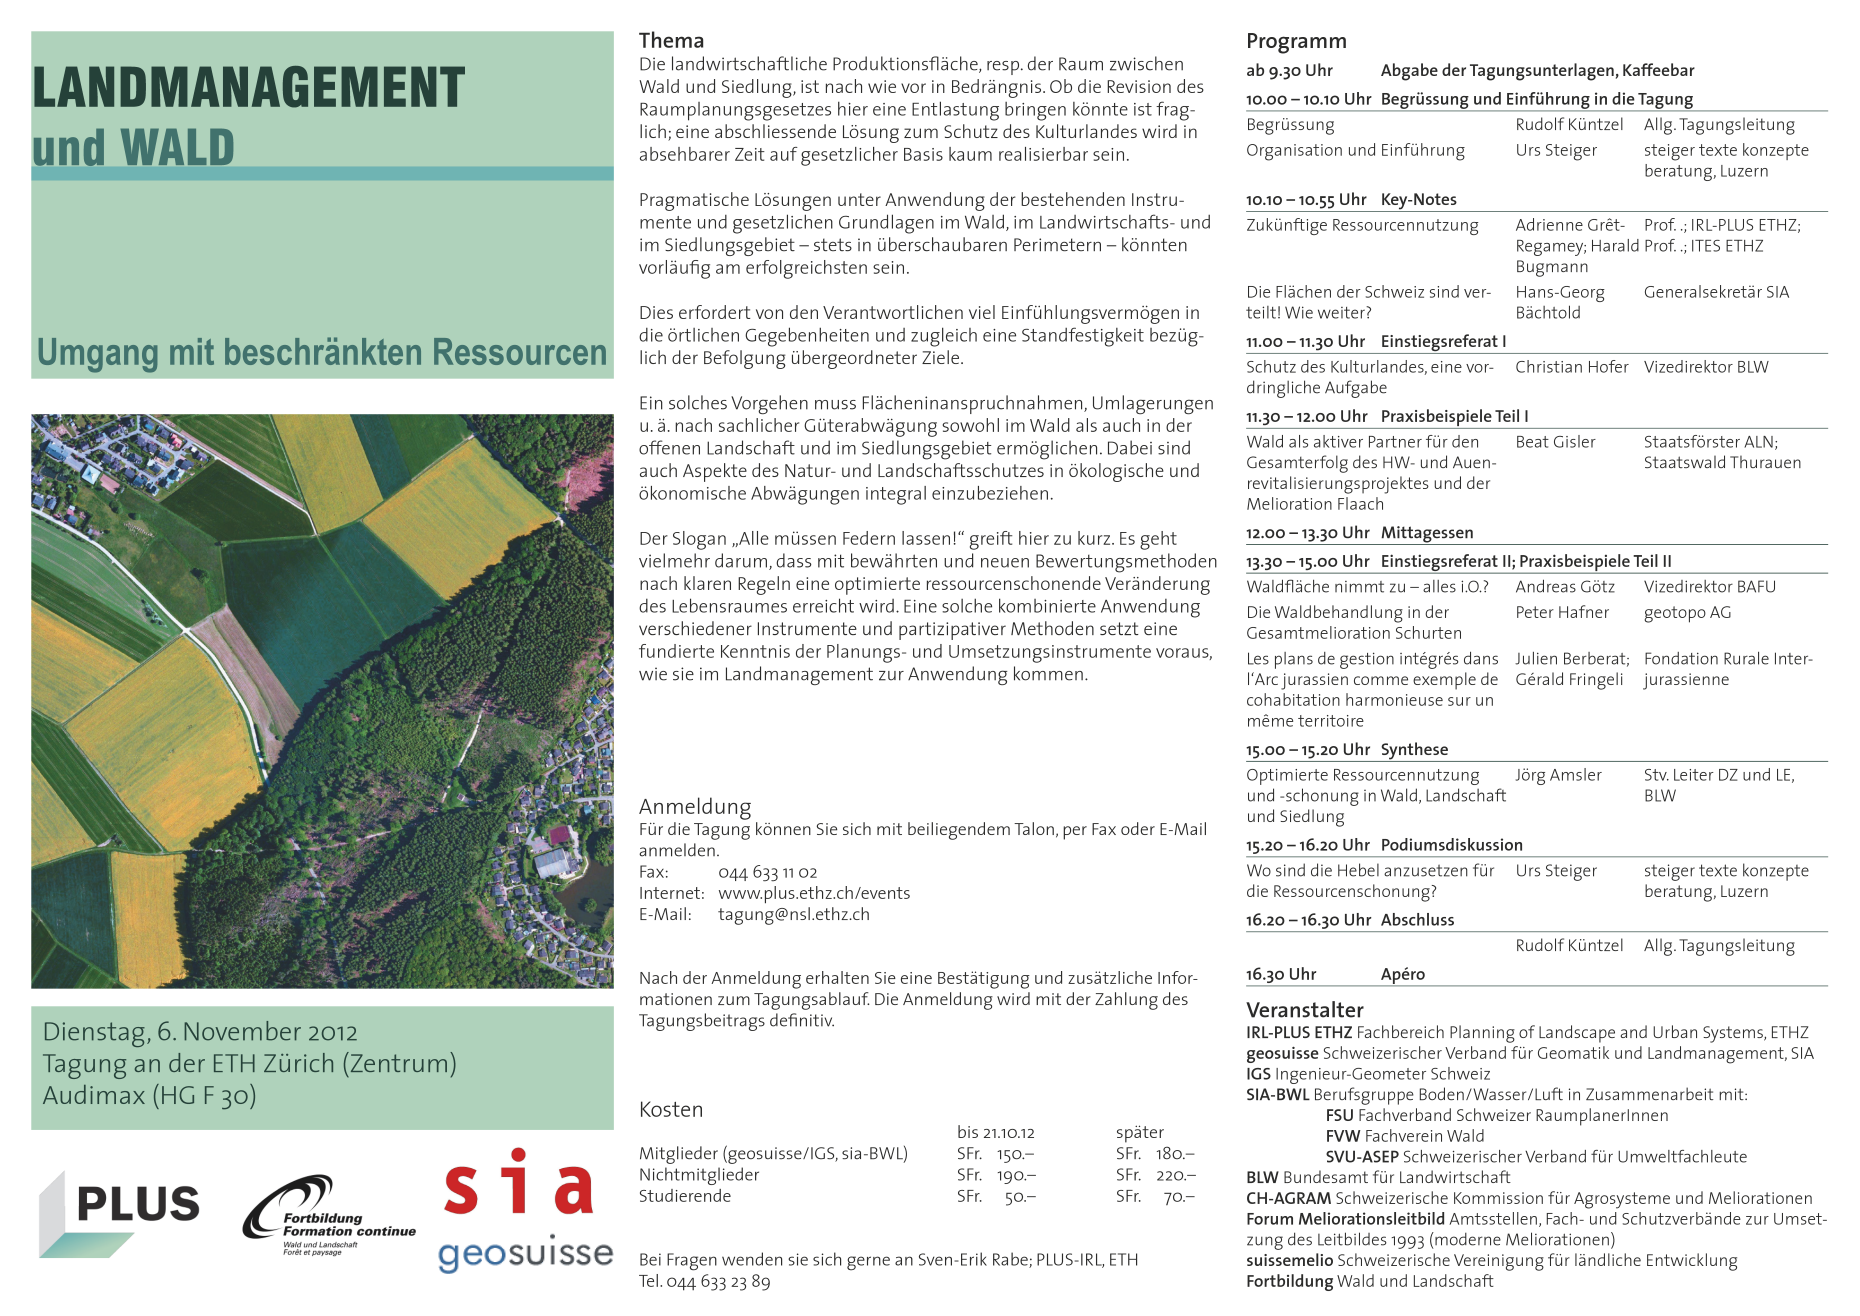 Vergrösserte Ansicht: Flyer Tagung Landmanagement 2012